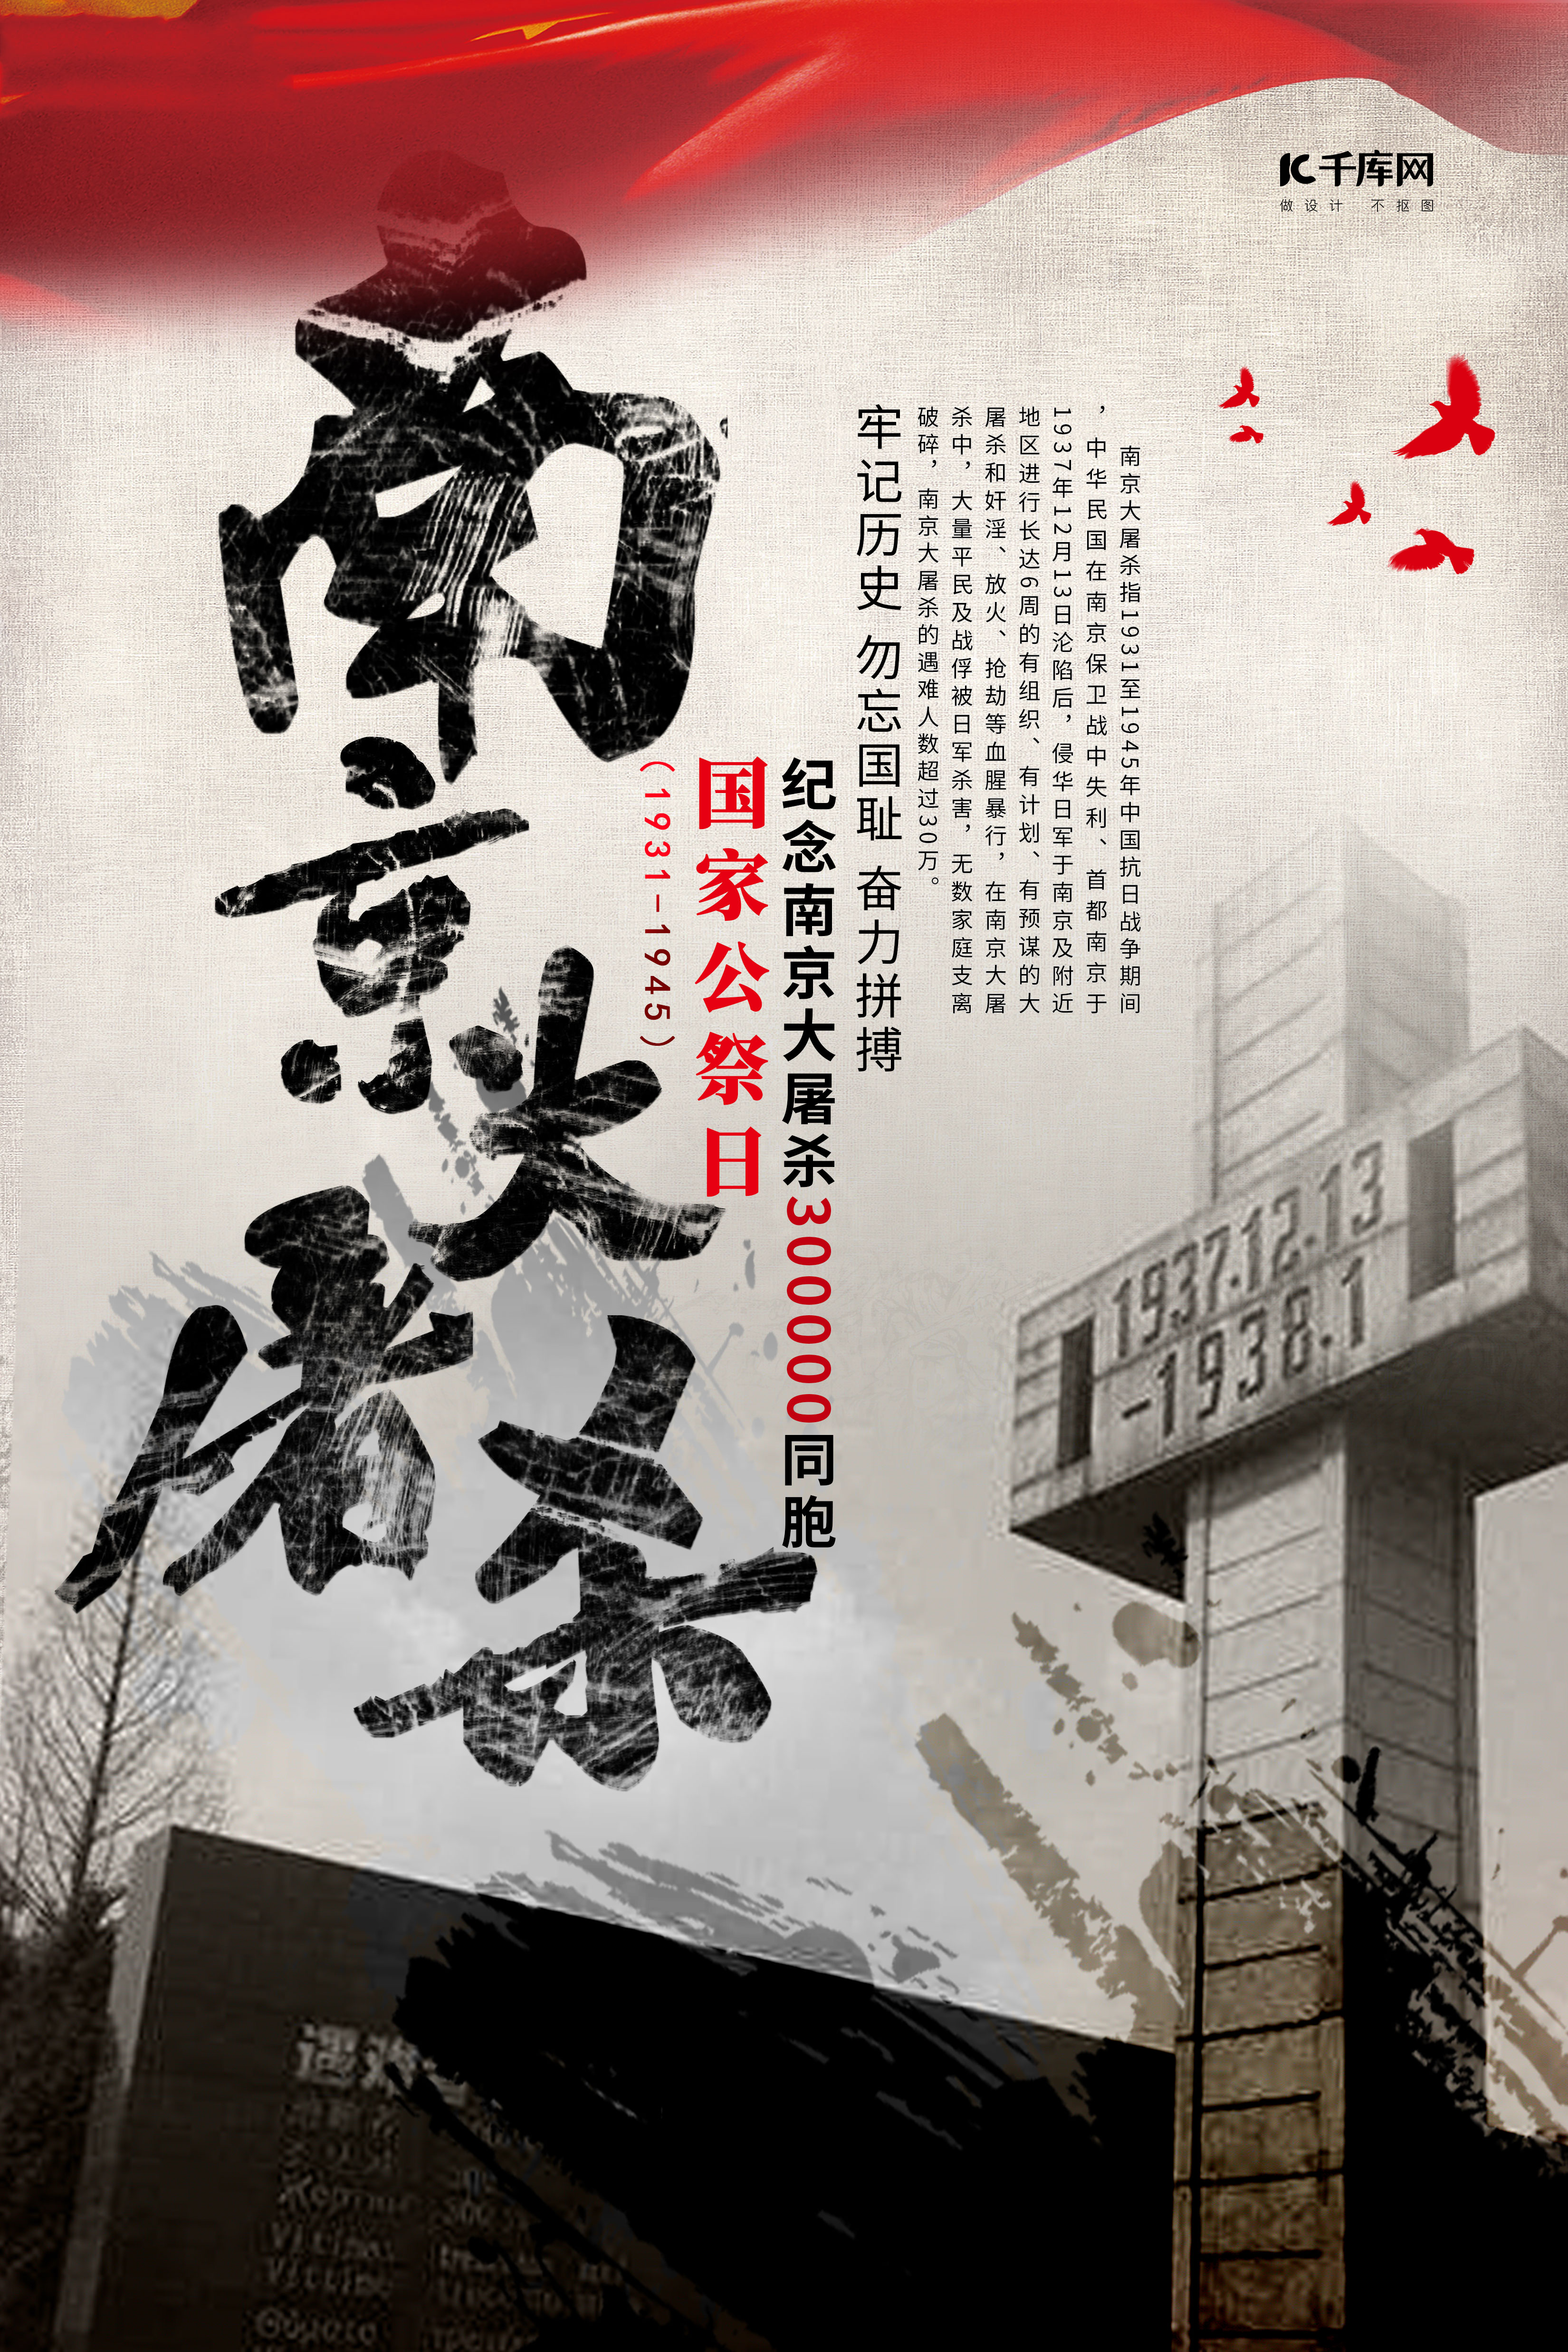 南京大屠杀 国家公祭日纪念碑灰色灰色海报图片